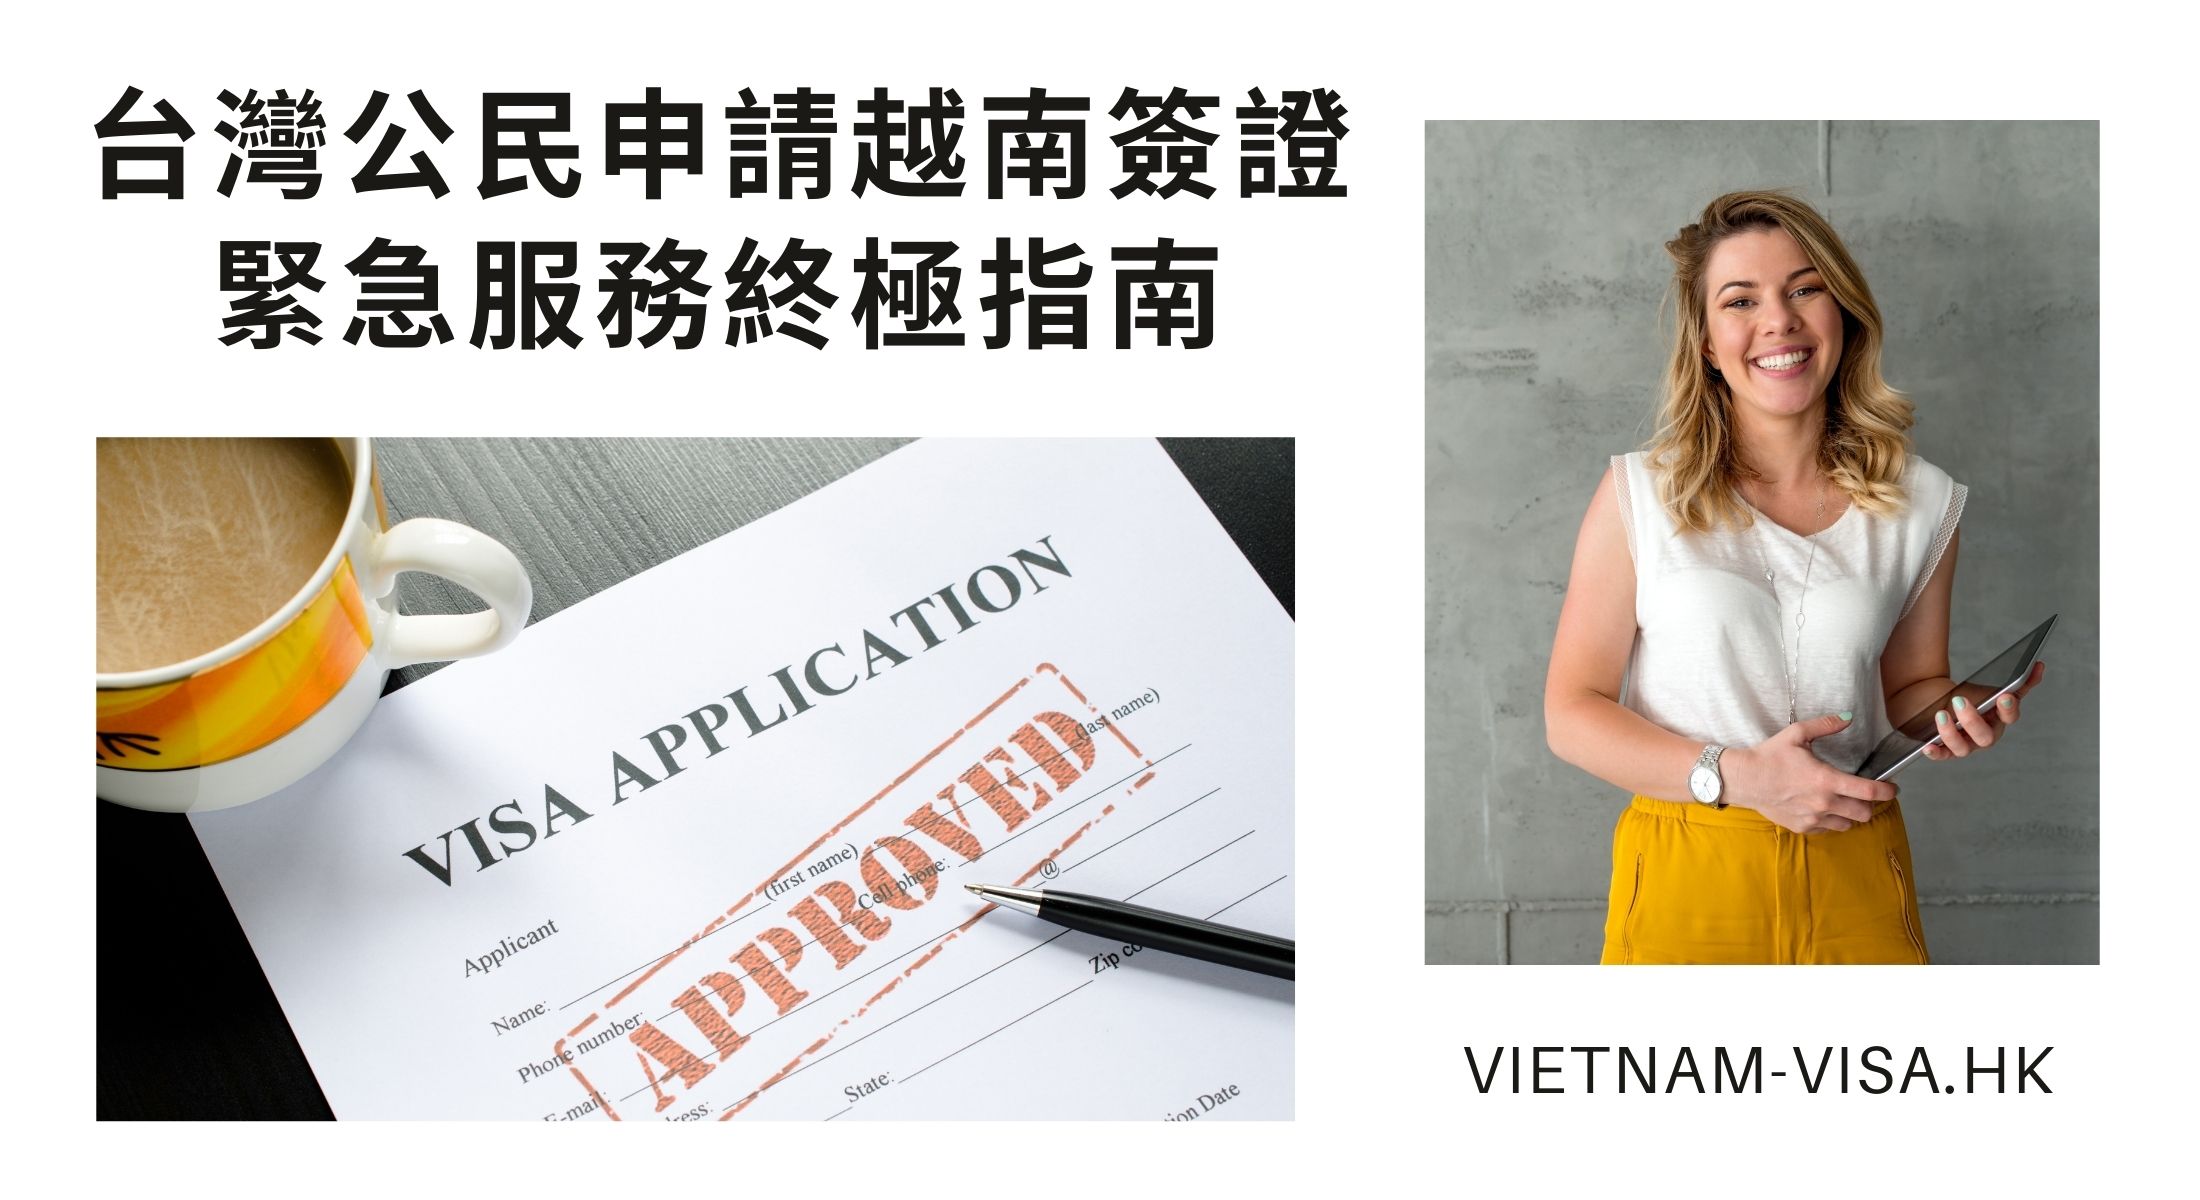 台灣公民申請越南簽證緊急服務終極指南